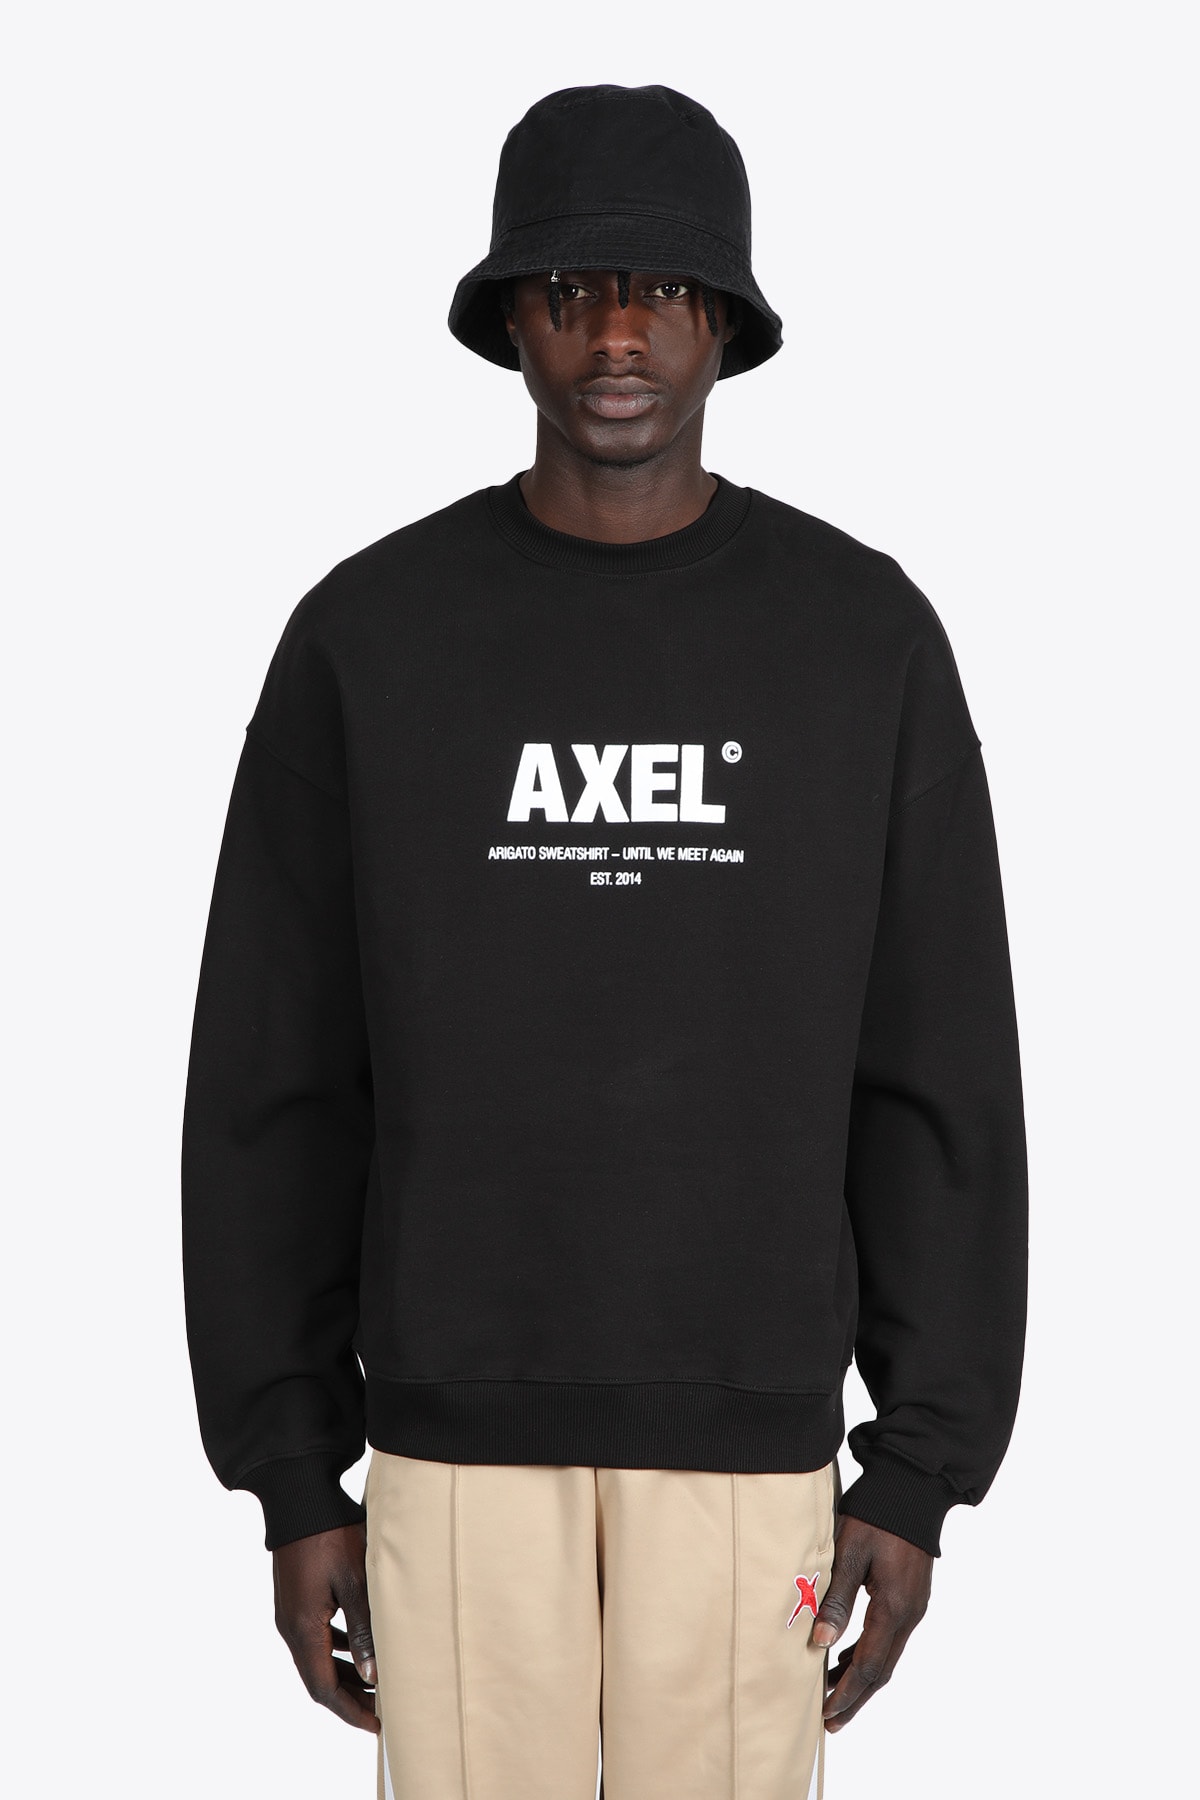 Axel Arigato Adios Sweatshirt Black cotton sweatshirt with bold logo - Adios Sweatshirt